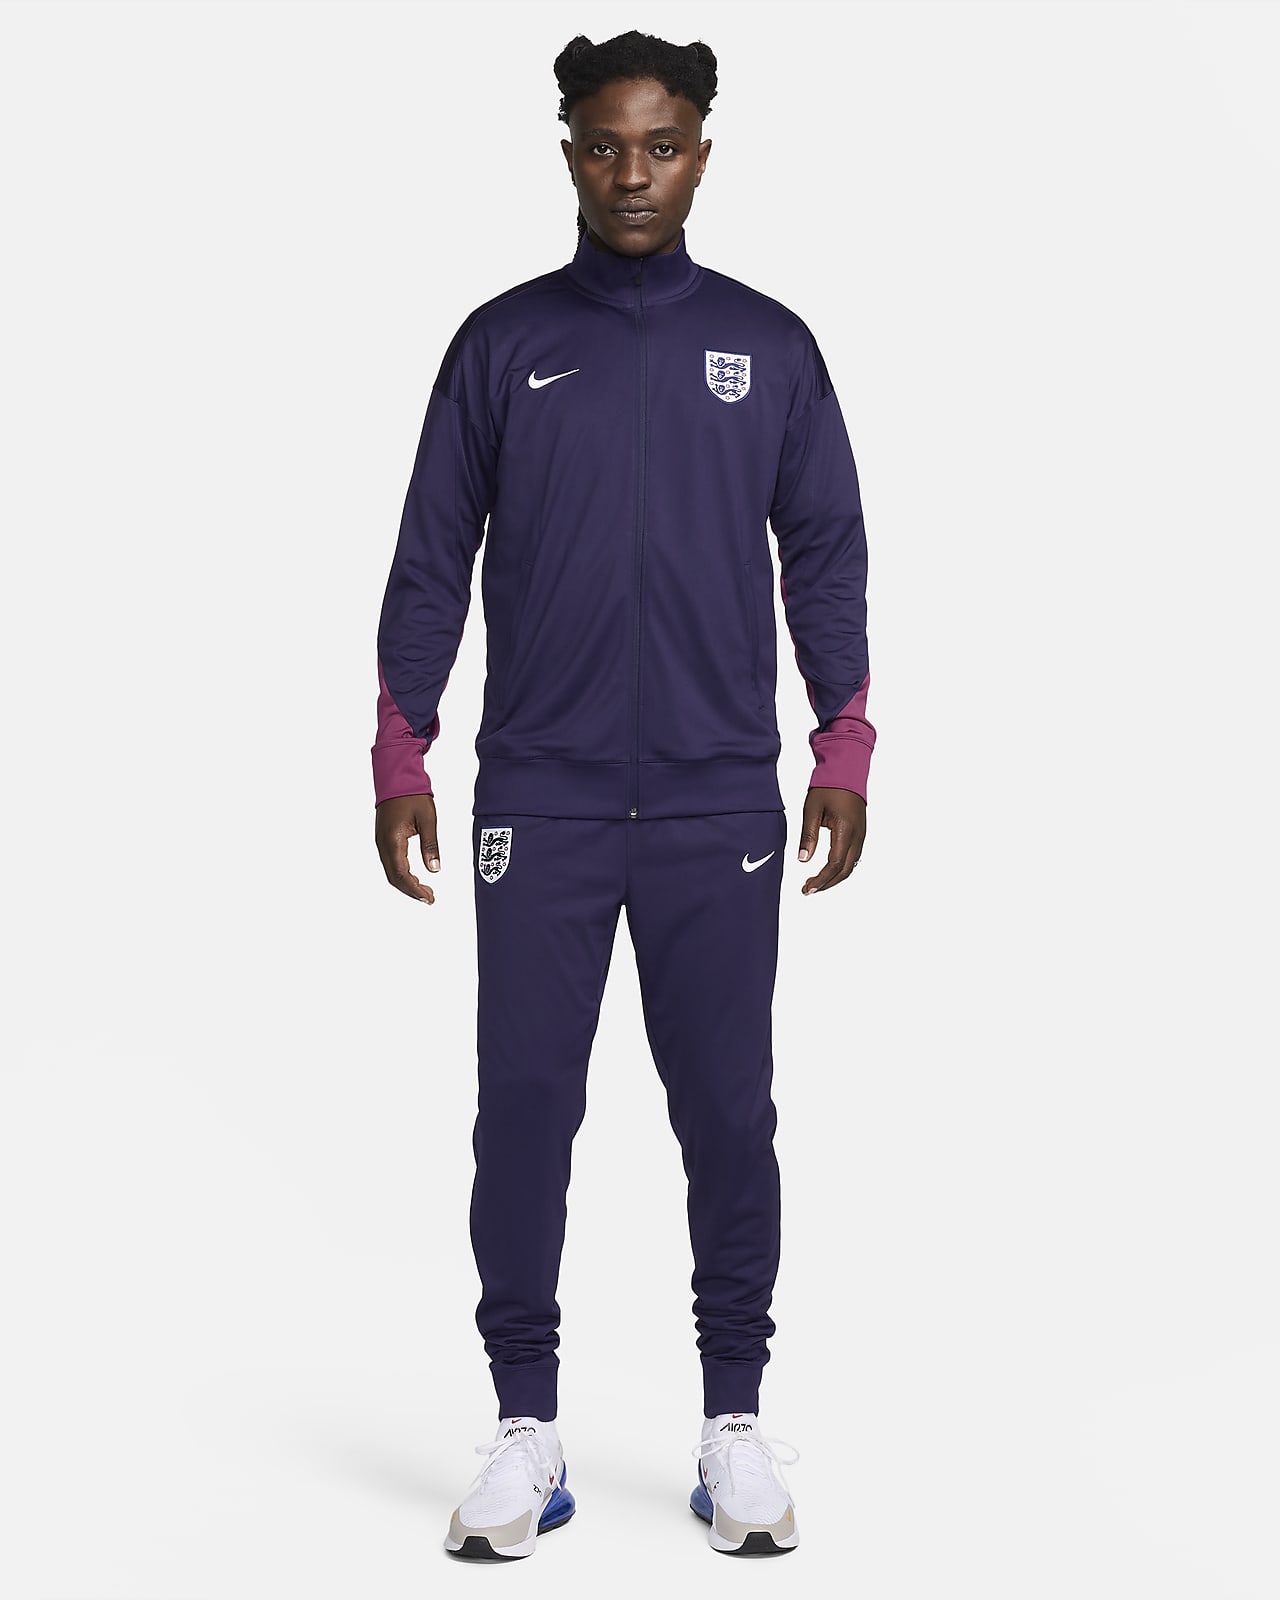 Ανδρική ποδοσφαιρική πλεκτή φόρμα Nike Dri-FIT Αγγλία Strike